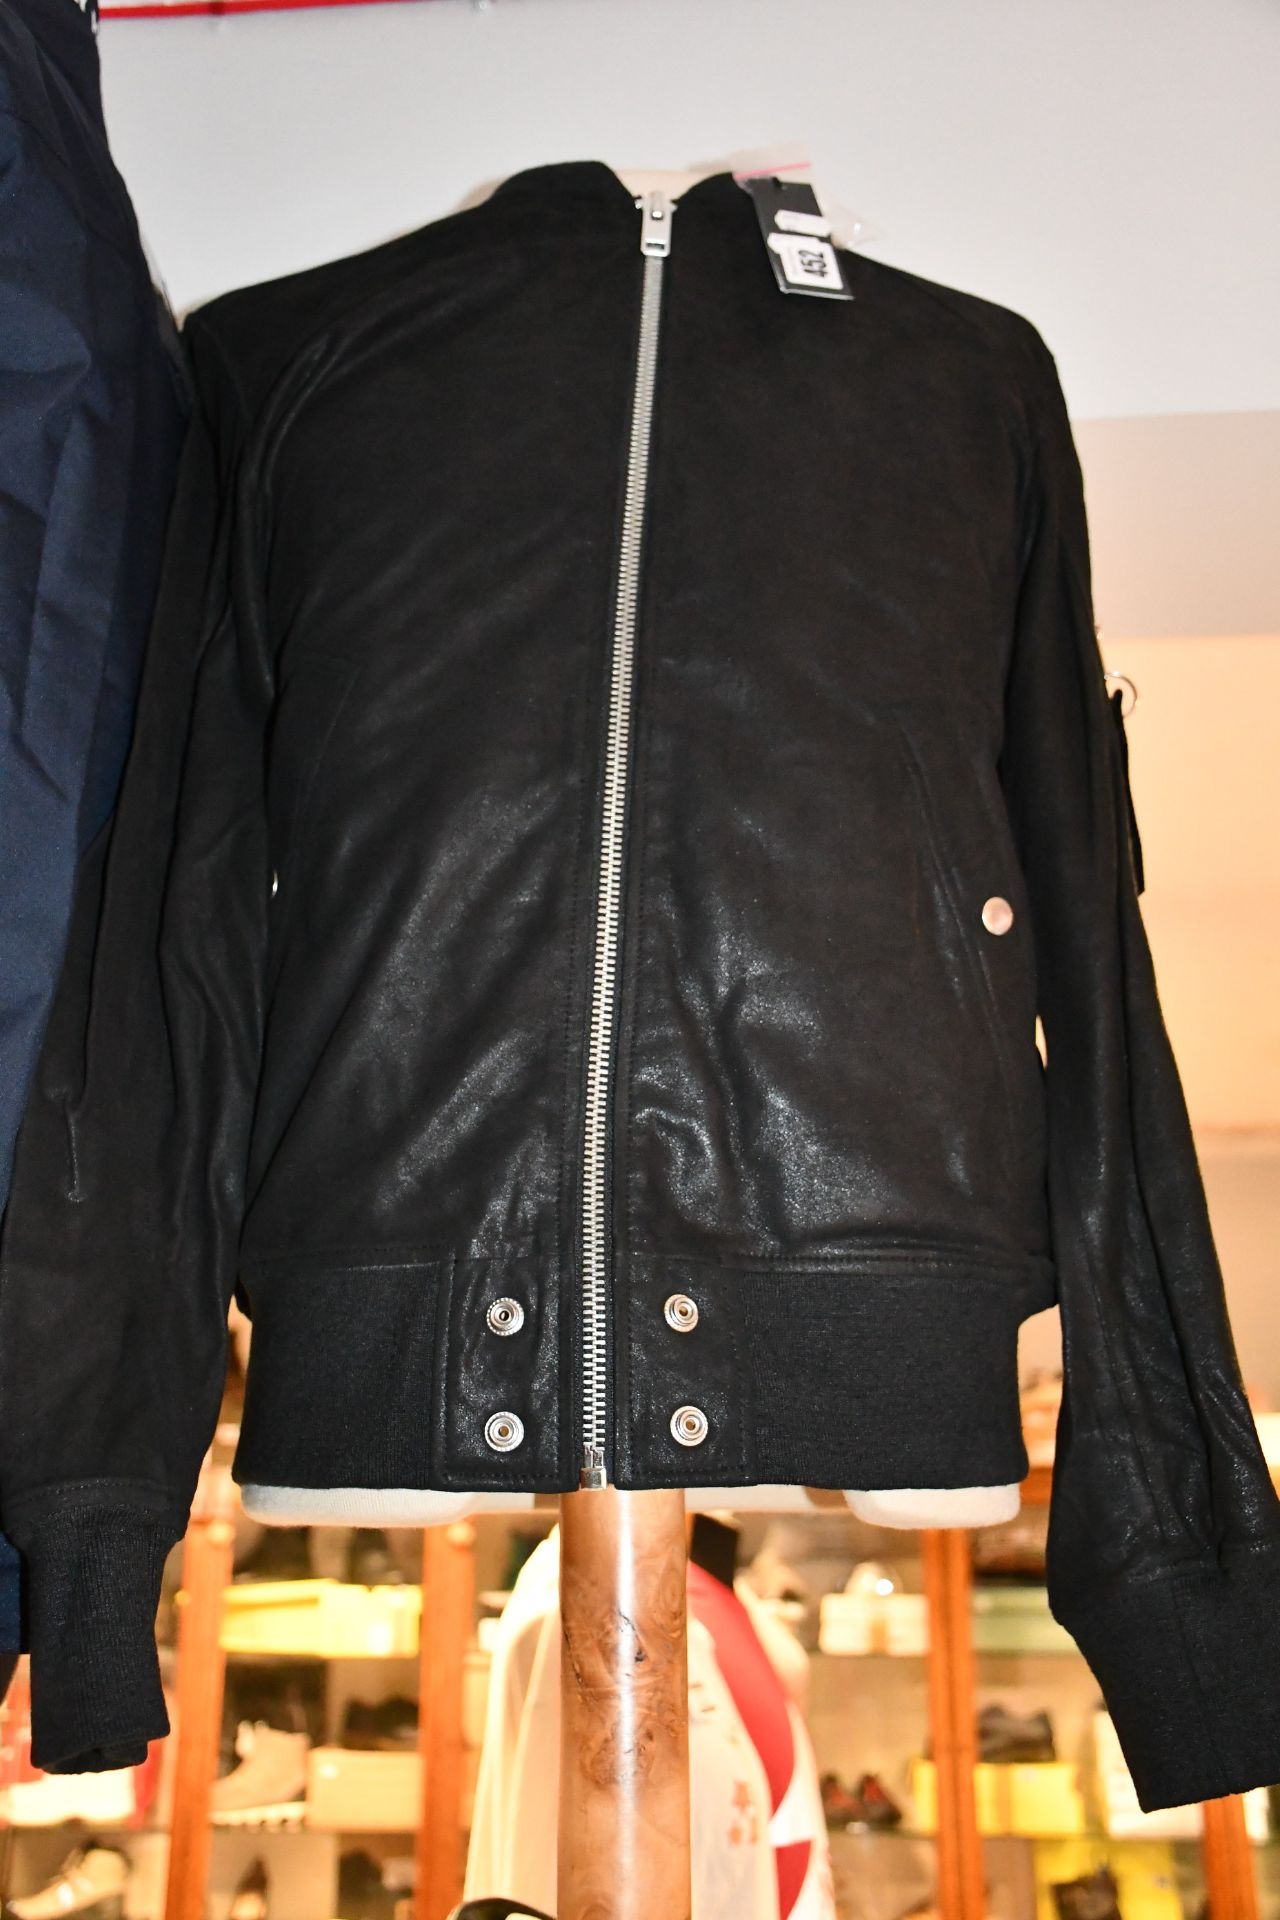 An as new Diesel Nikolai jacket (L - RRP £490).